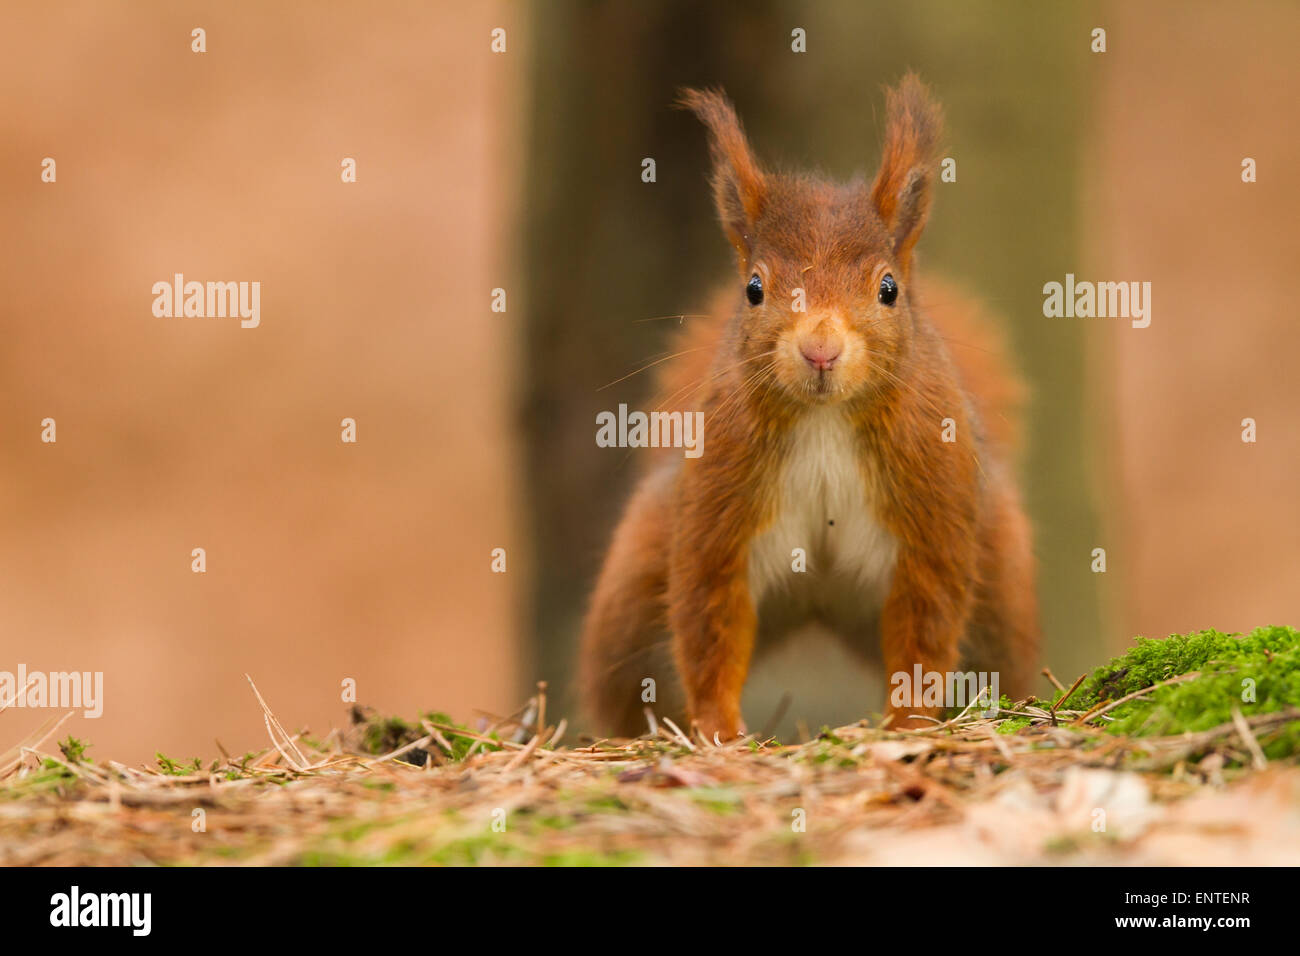 Red scoiattolo (Sciurus vulgaris) nel bosco, England, Regno Unito Foto Stock